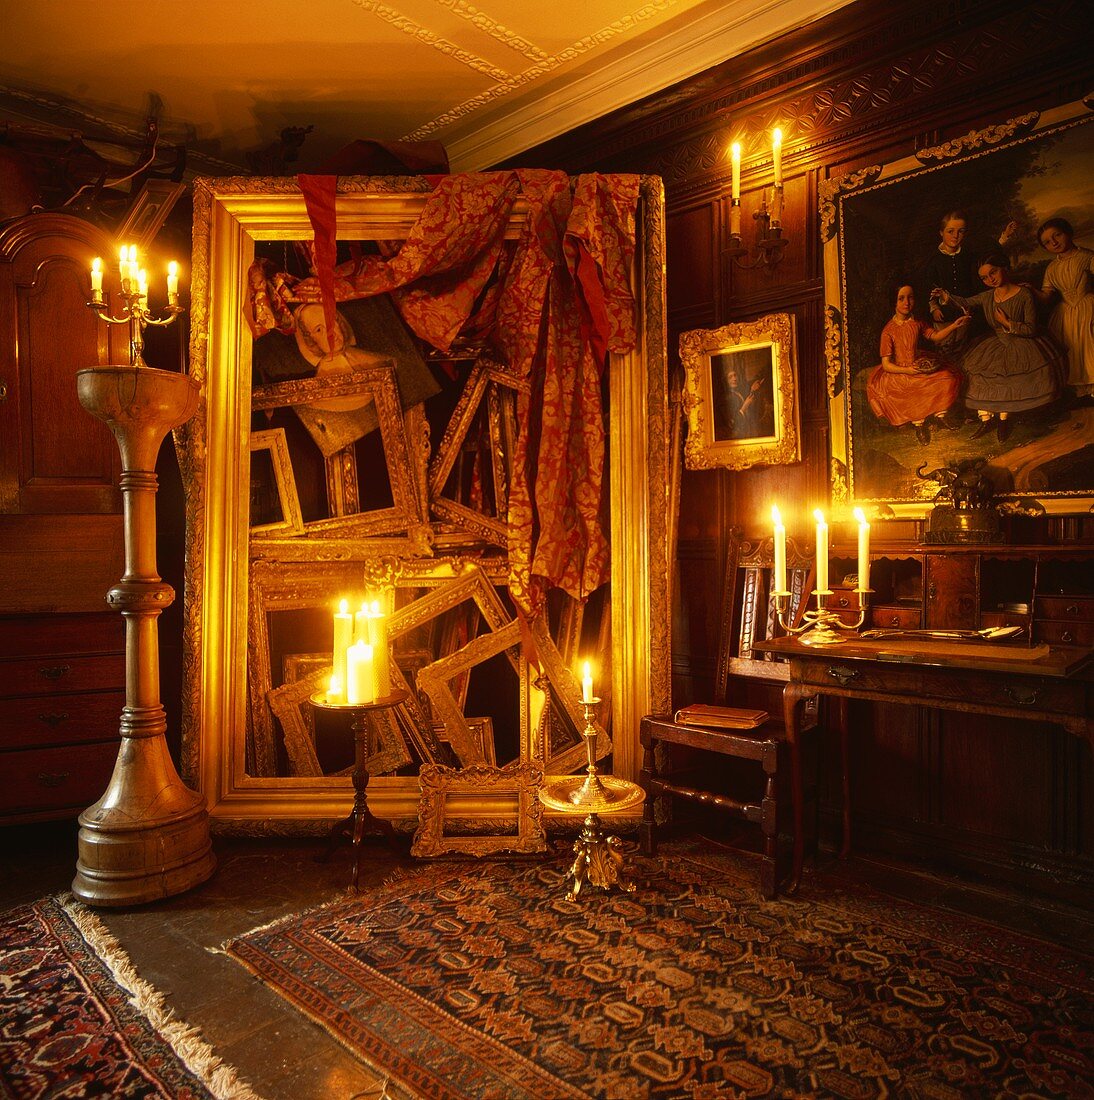 Raumhohe Skulptur aus leeren, vergoldeten Bilderrahmen stimmungsvoll mit Kerzenlicht beleuchtet in Wohnraum mit Holzvertäfelung